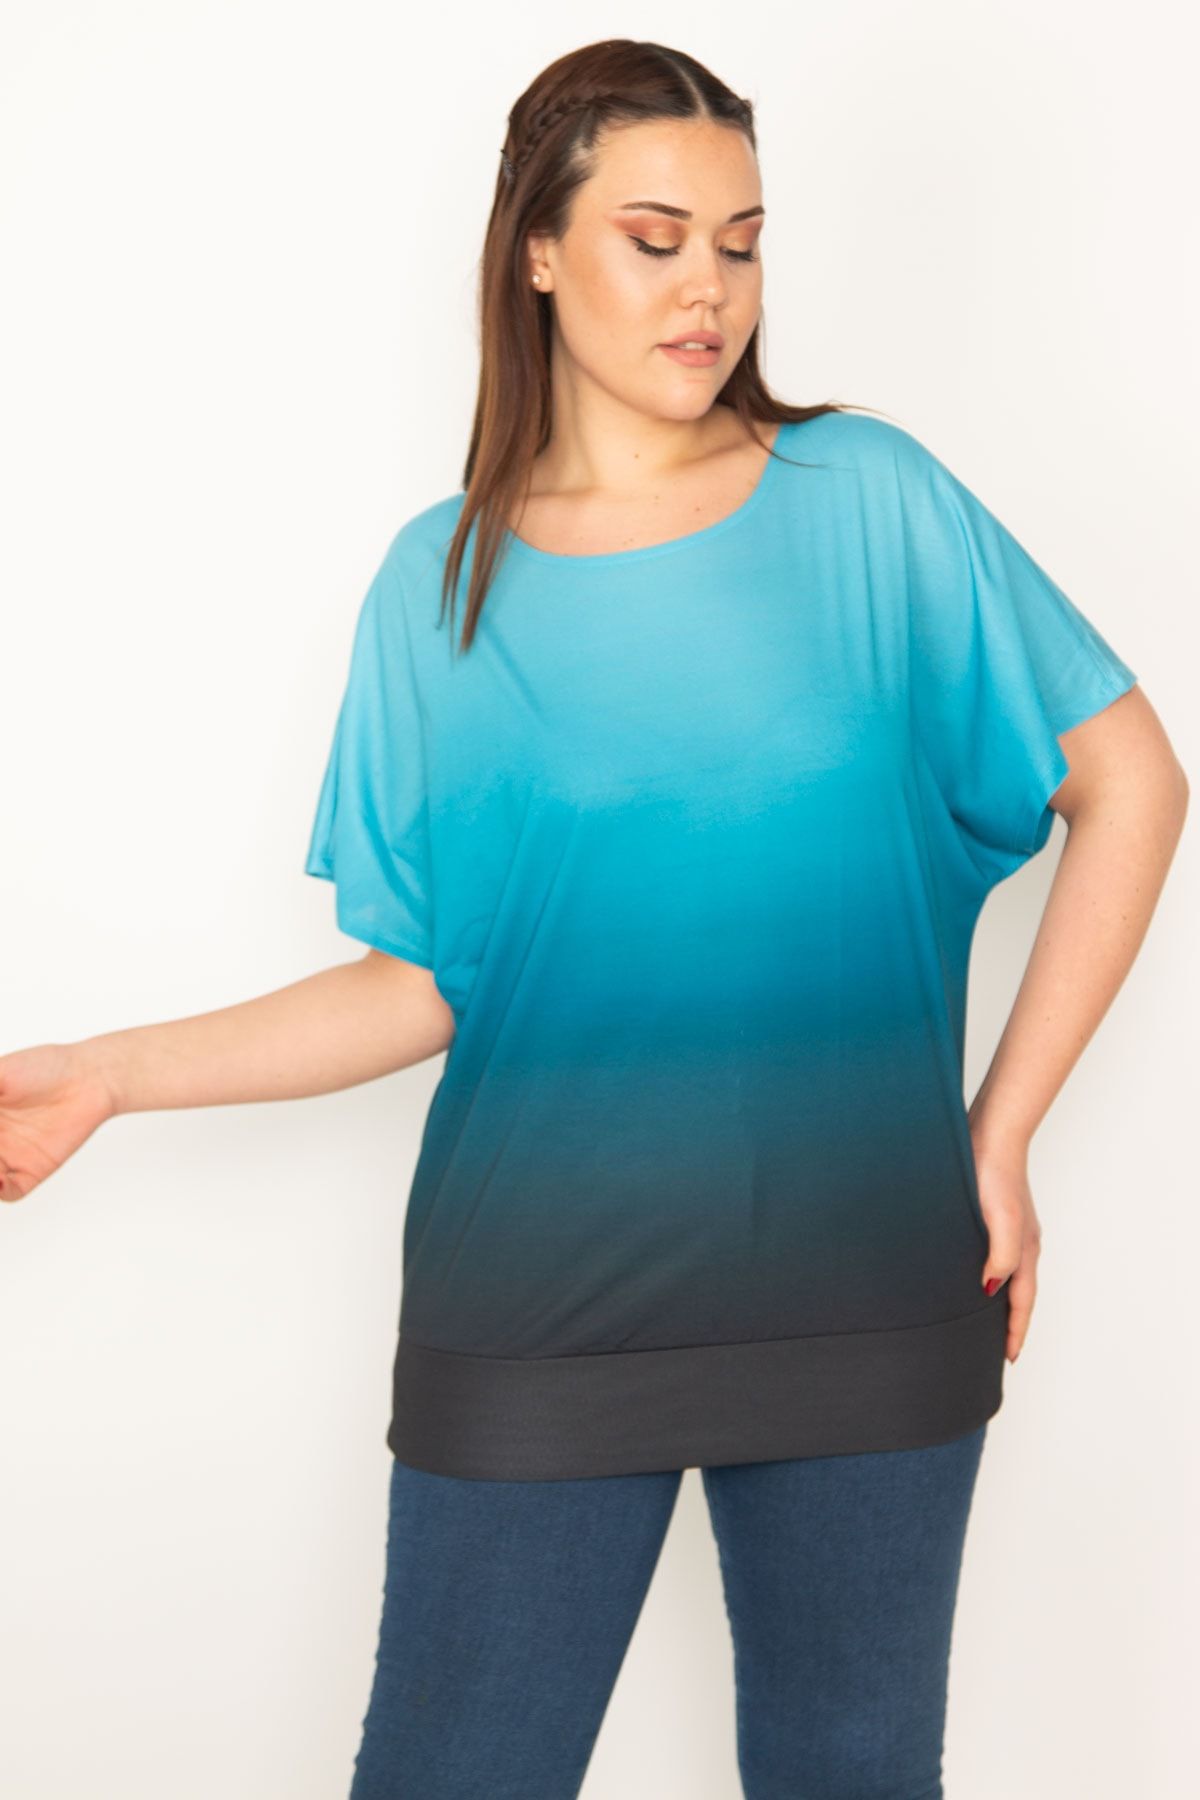 Şans Tekstil Batik Desenli Düşük Kol Etek Ucu Bantlı Bluz 26a22754